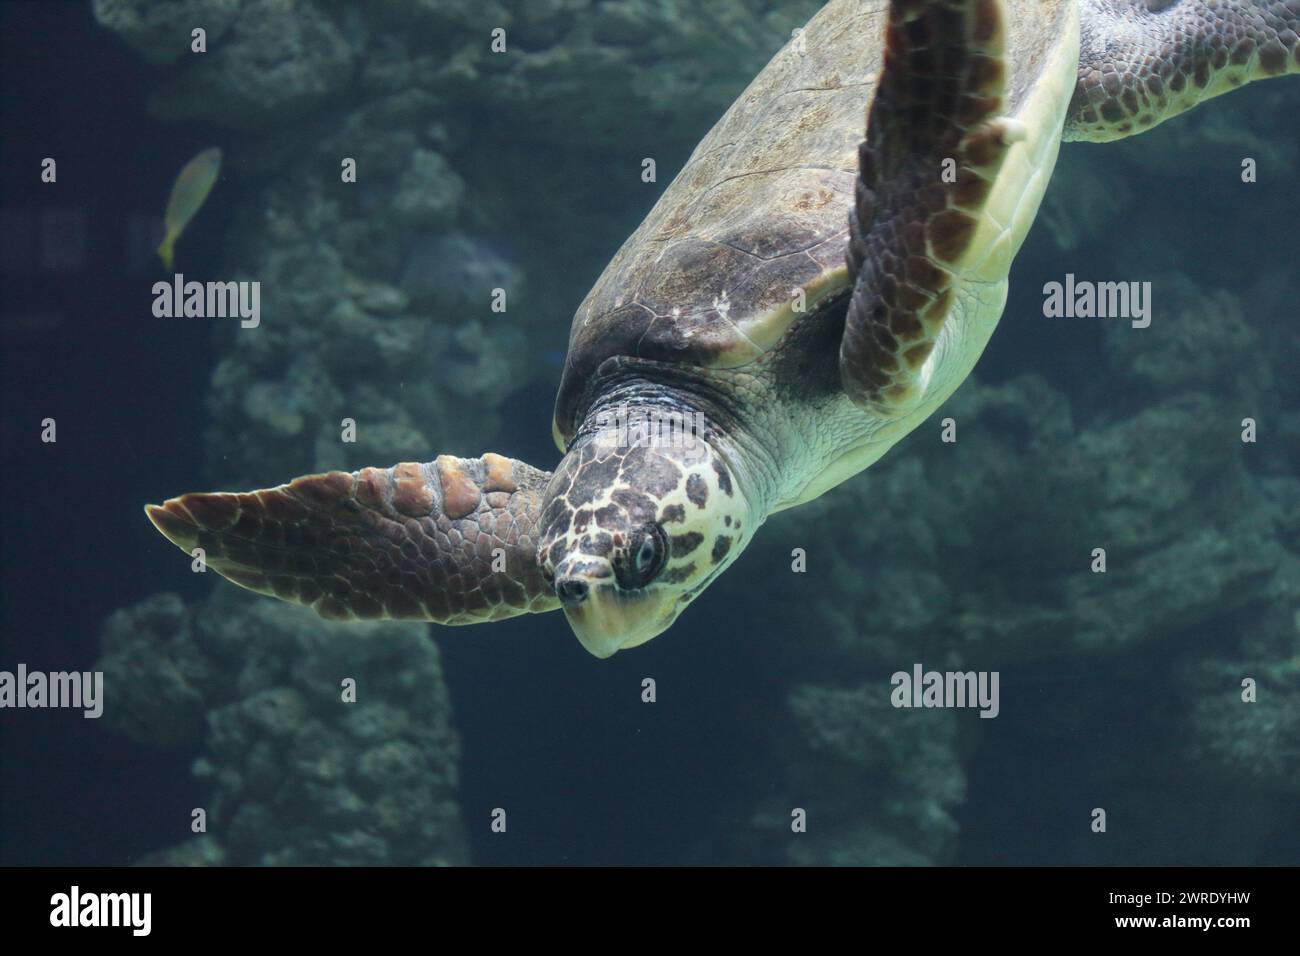 La tartaruga di mare (Caretta caretta) è una tartaruga oceanica distribuita in tutto il mondo. E' un rettile marino, appartenente a. Foto Stock